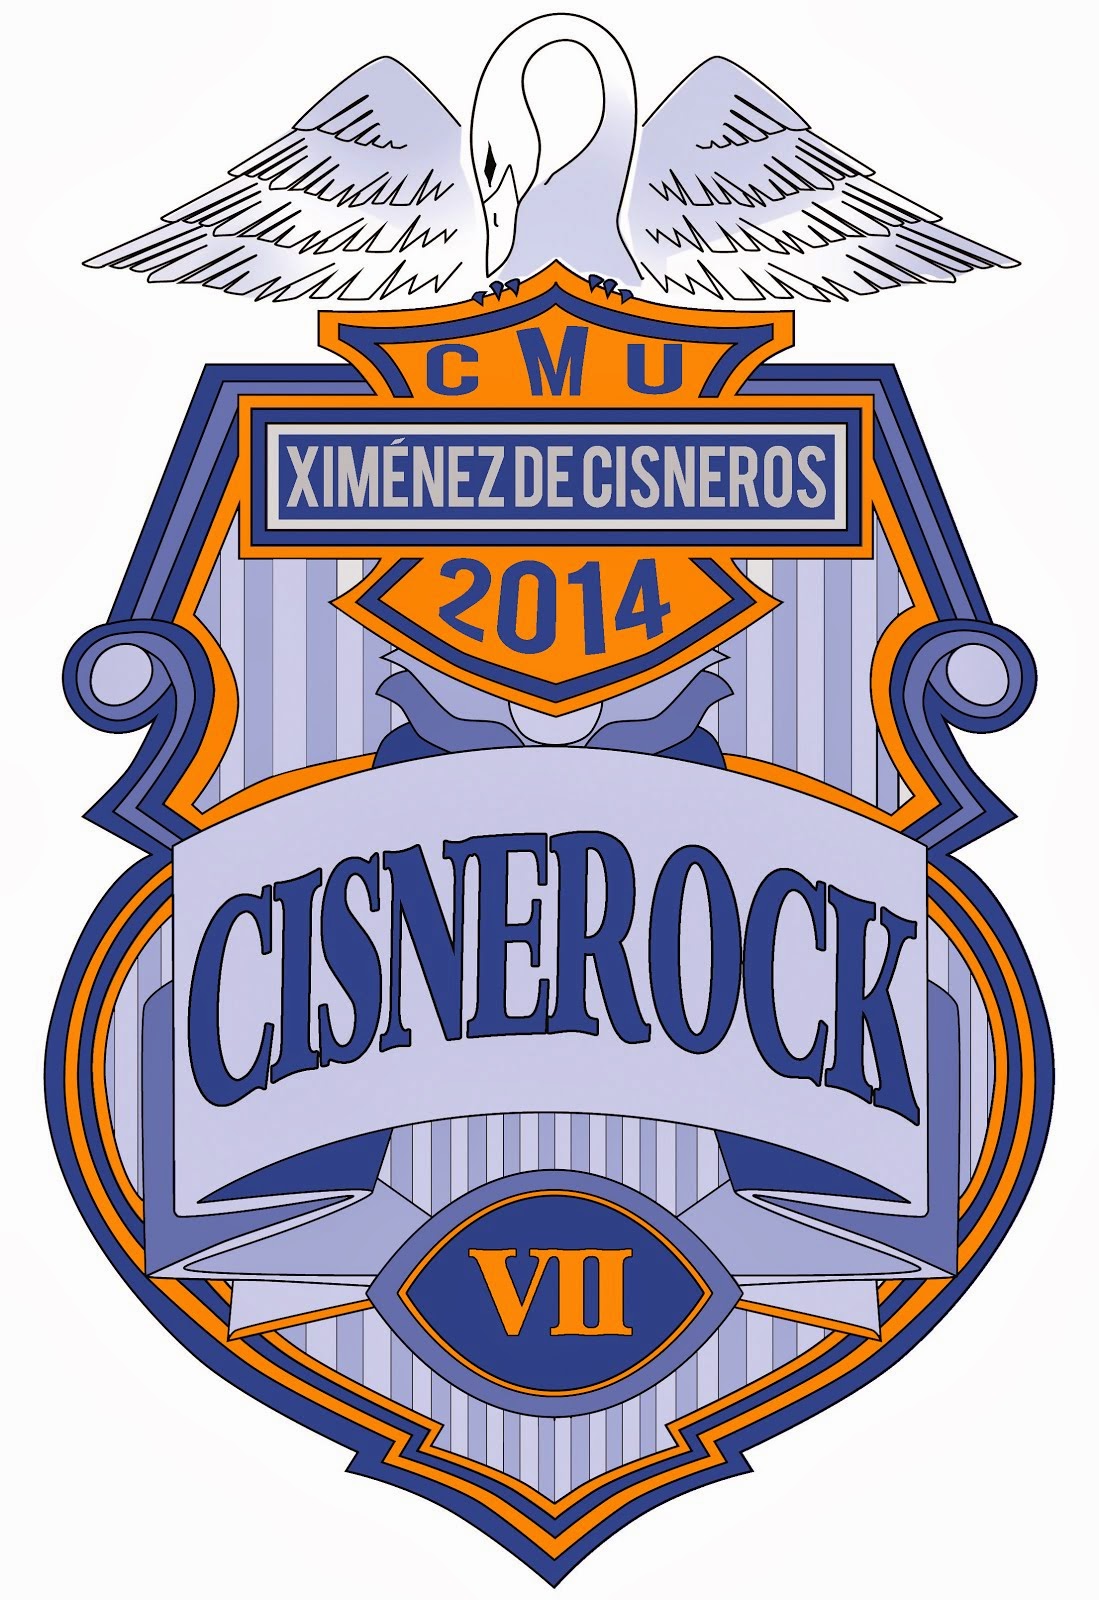 Cisnerock'14